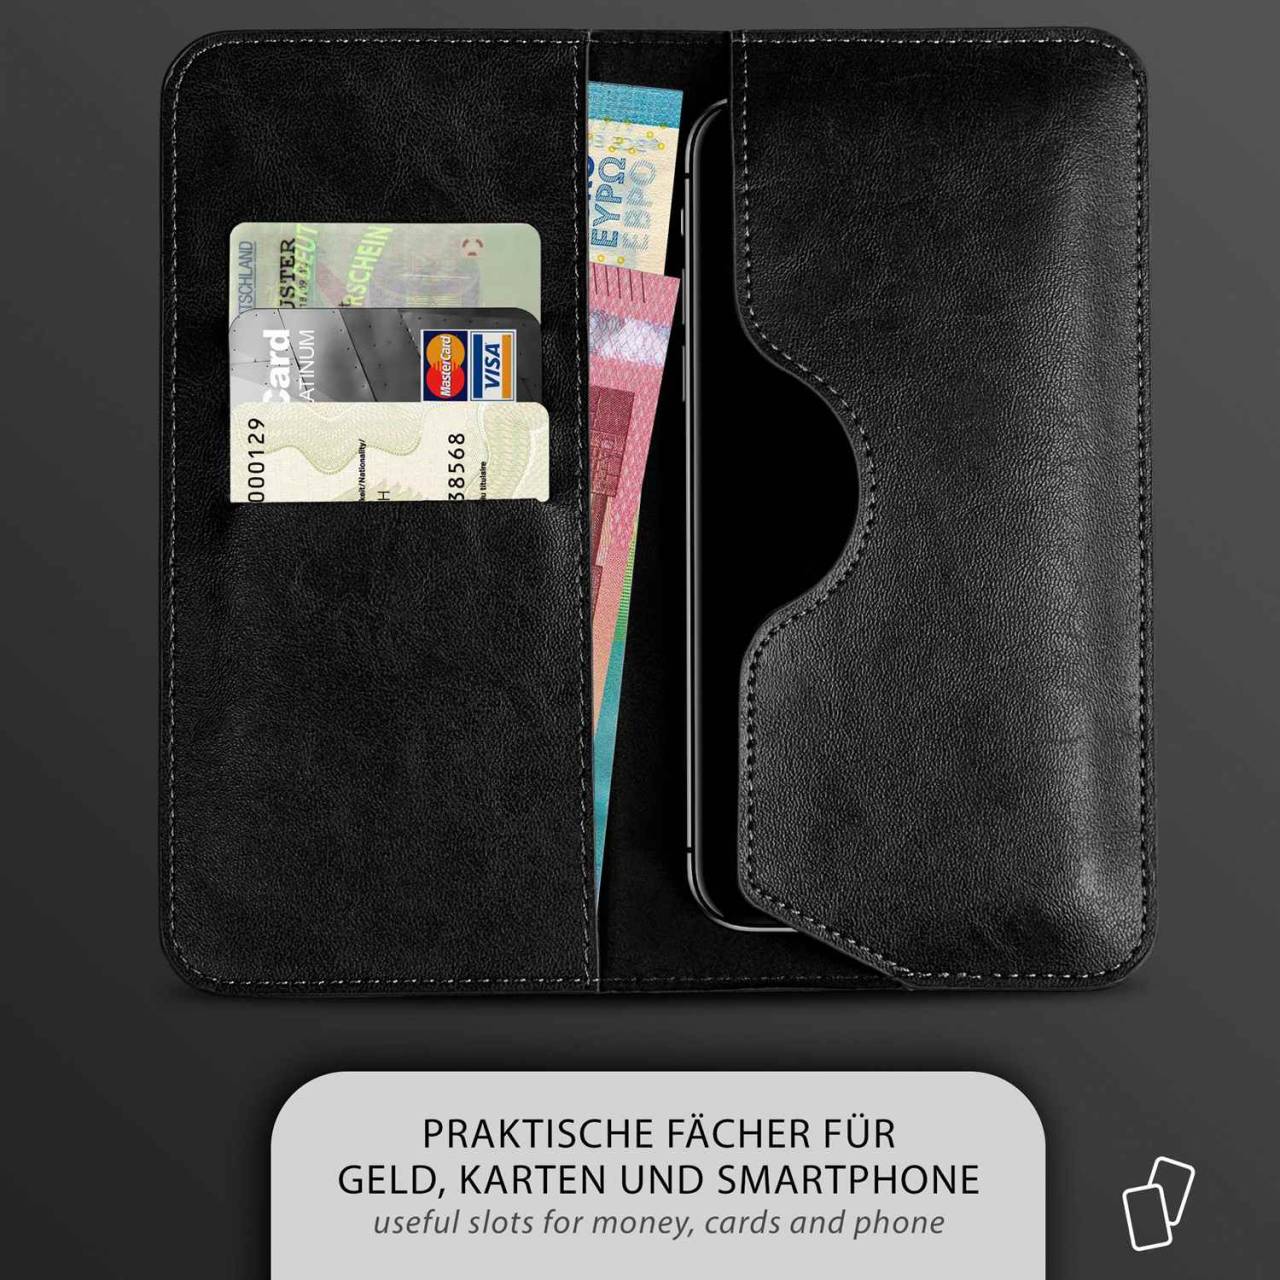 moex Purse Case für LG V10 – Handytasche mit Geldbörses aus PU Leder, Geld- & Handyfach